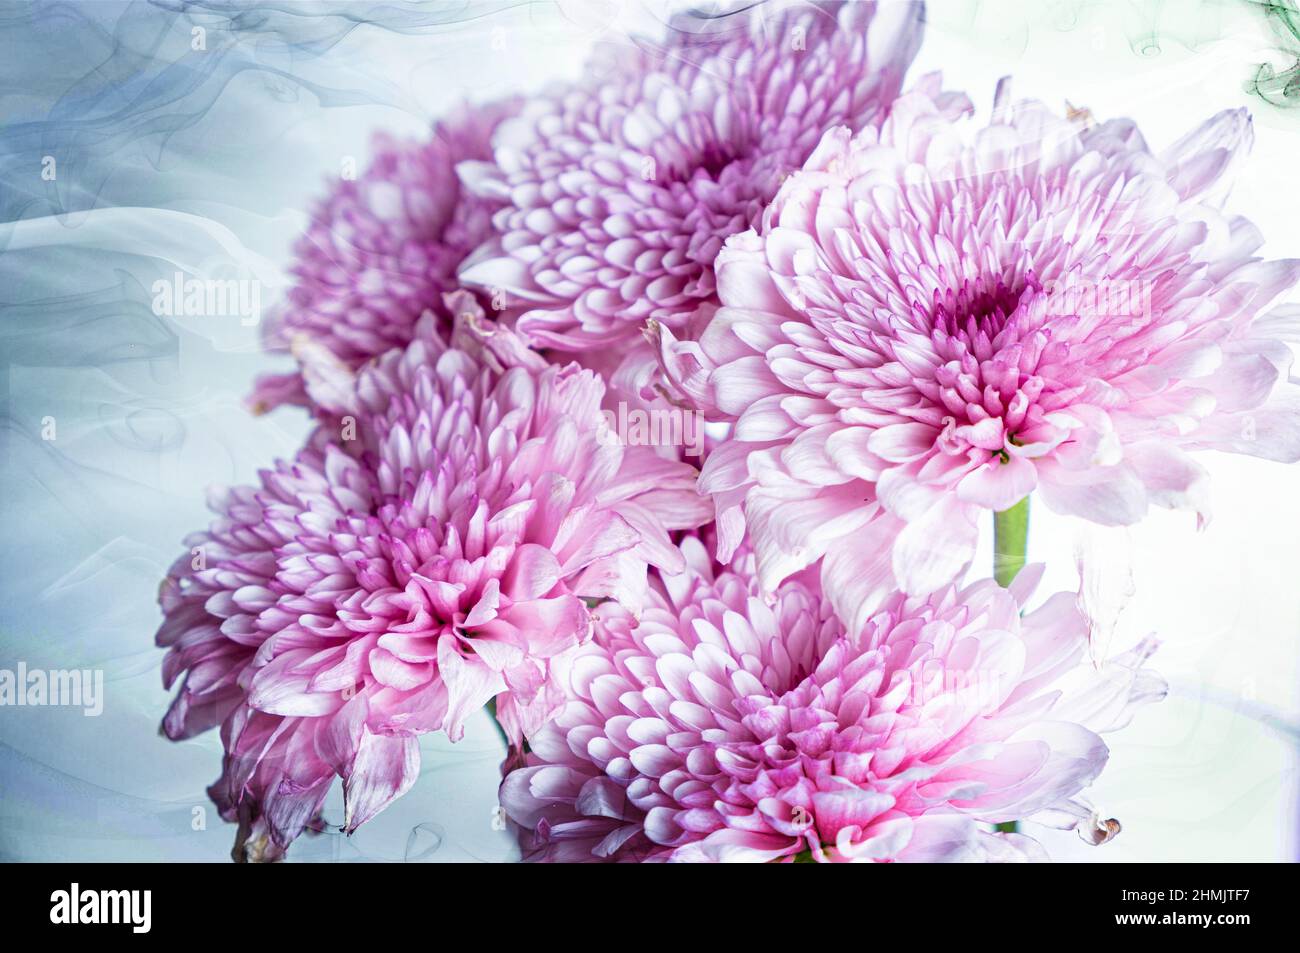 Wall Art Images of Flowers ensuite traitées comme des images de beaux-arts avec un logiciel de montage. Images idéales pour les types Banque D'Images